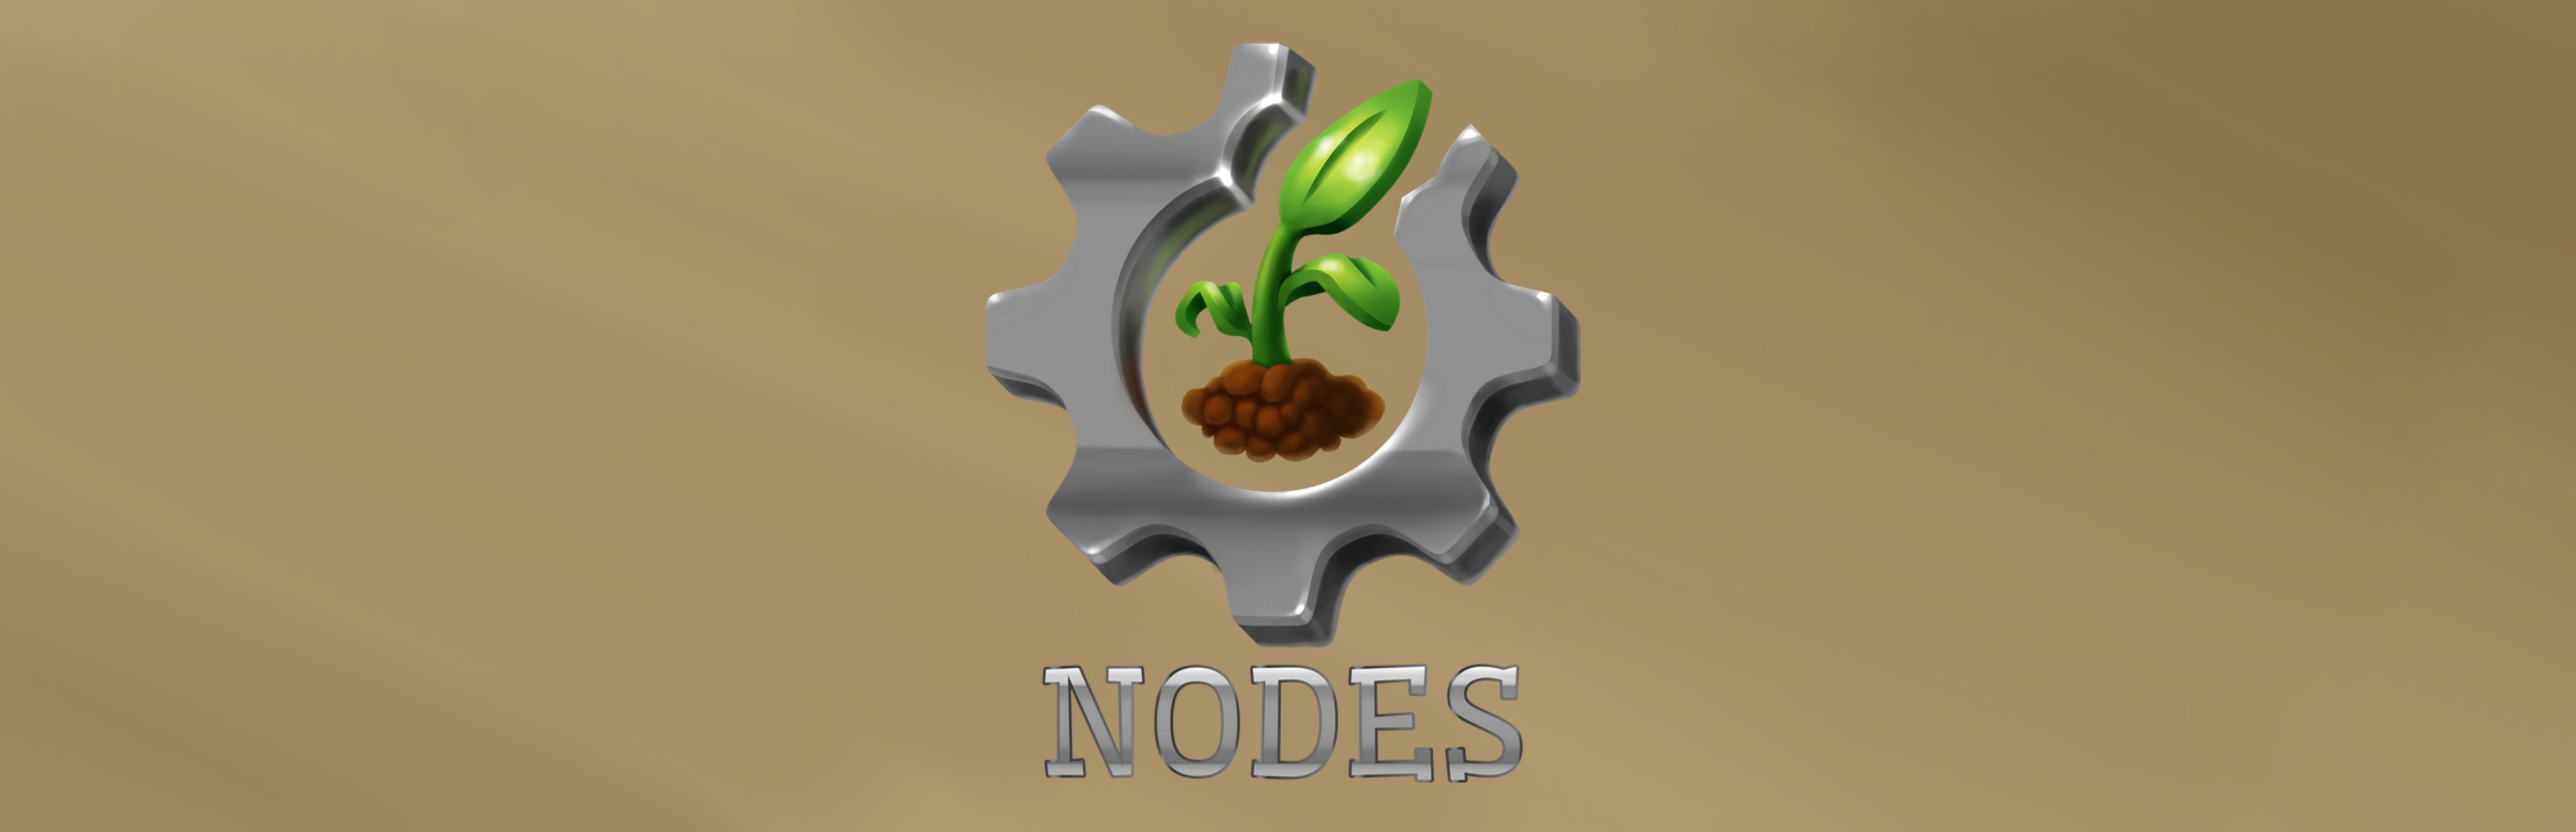 Nodes